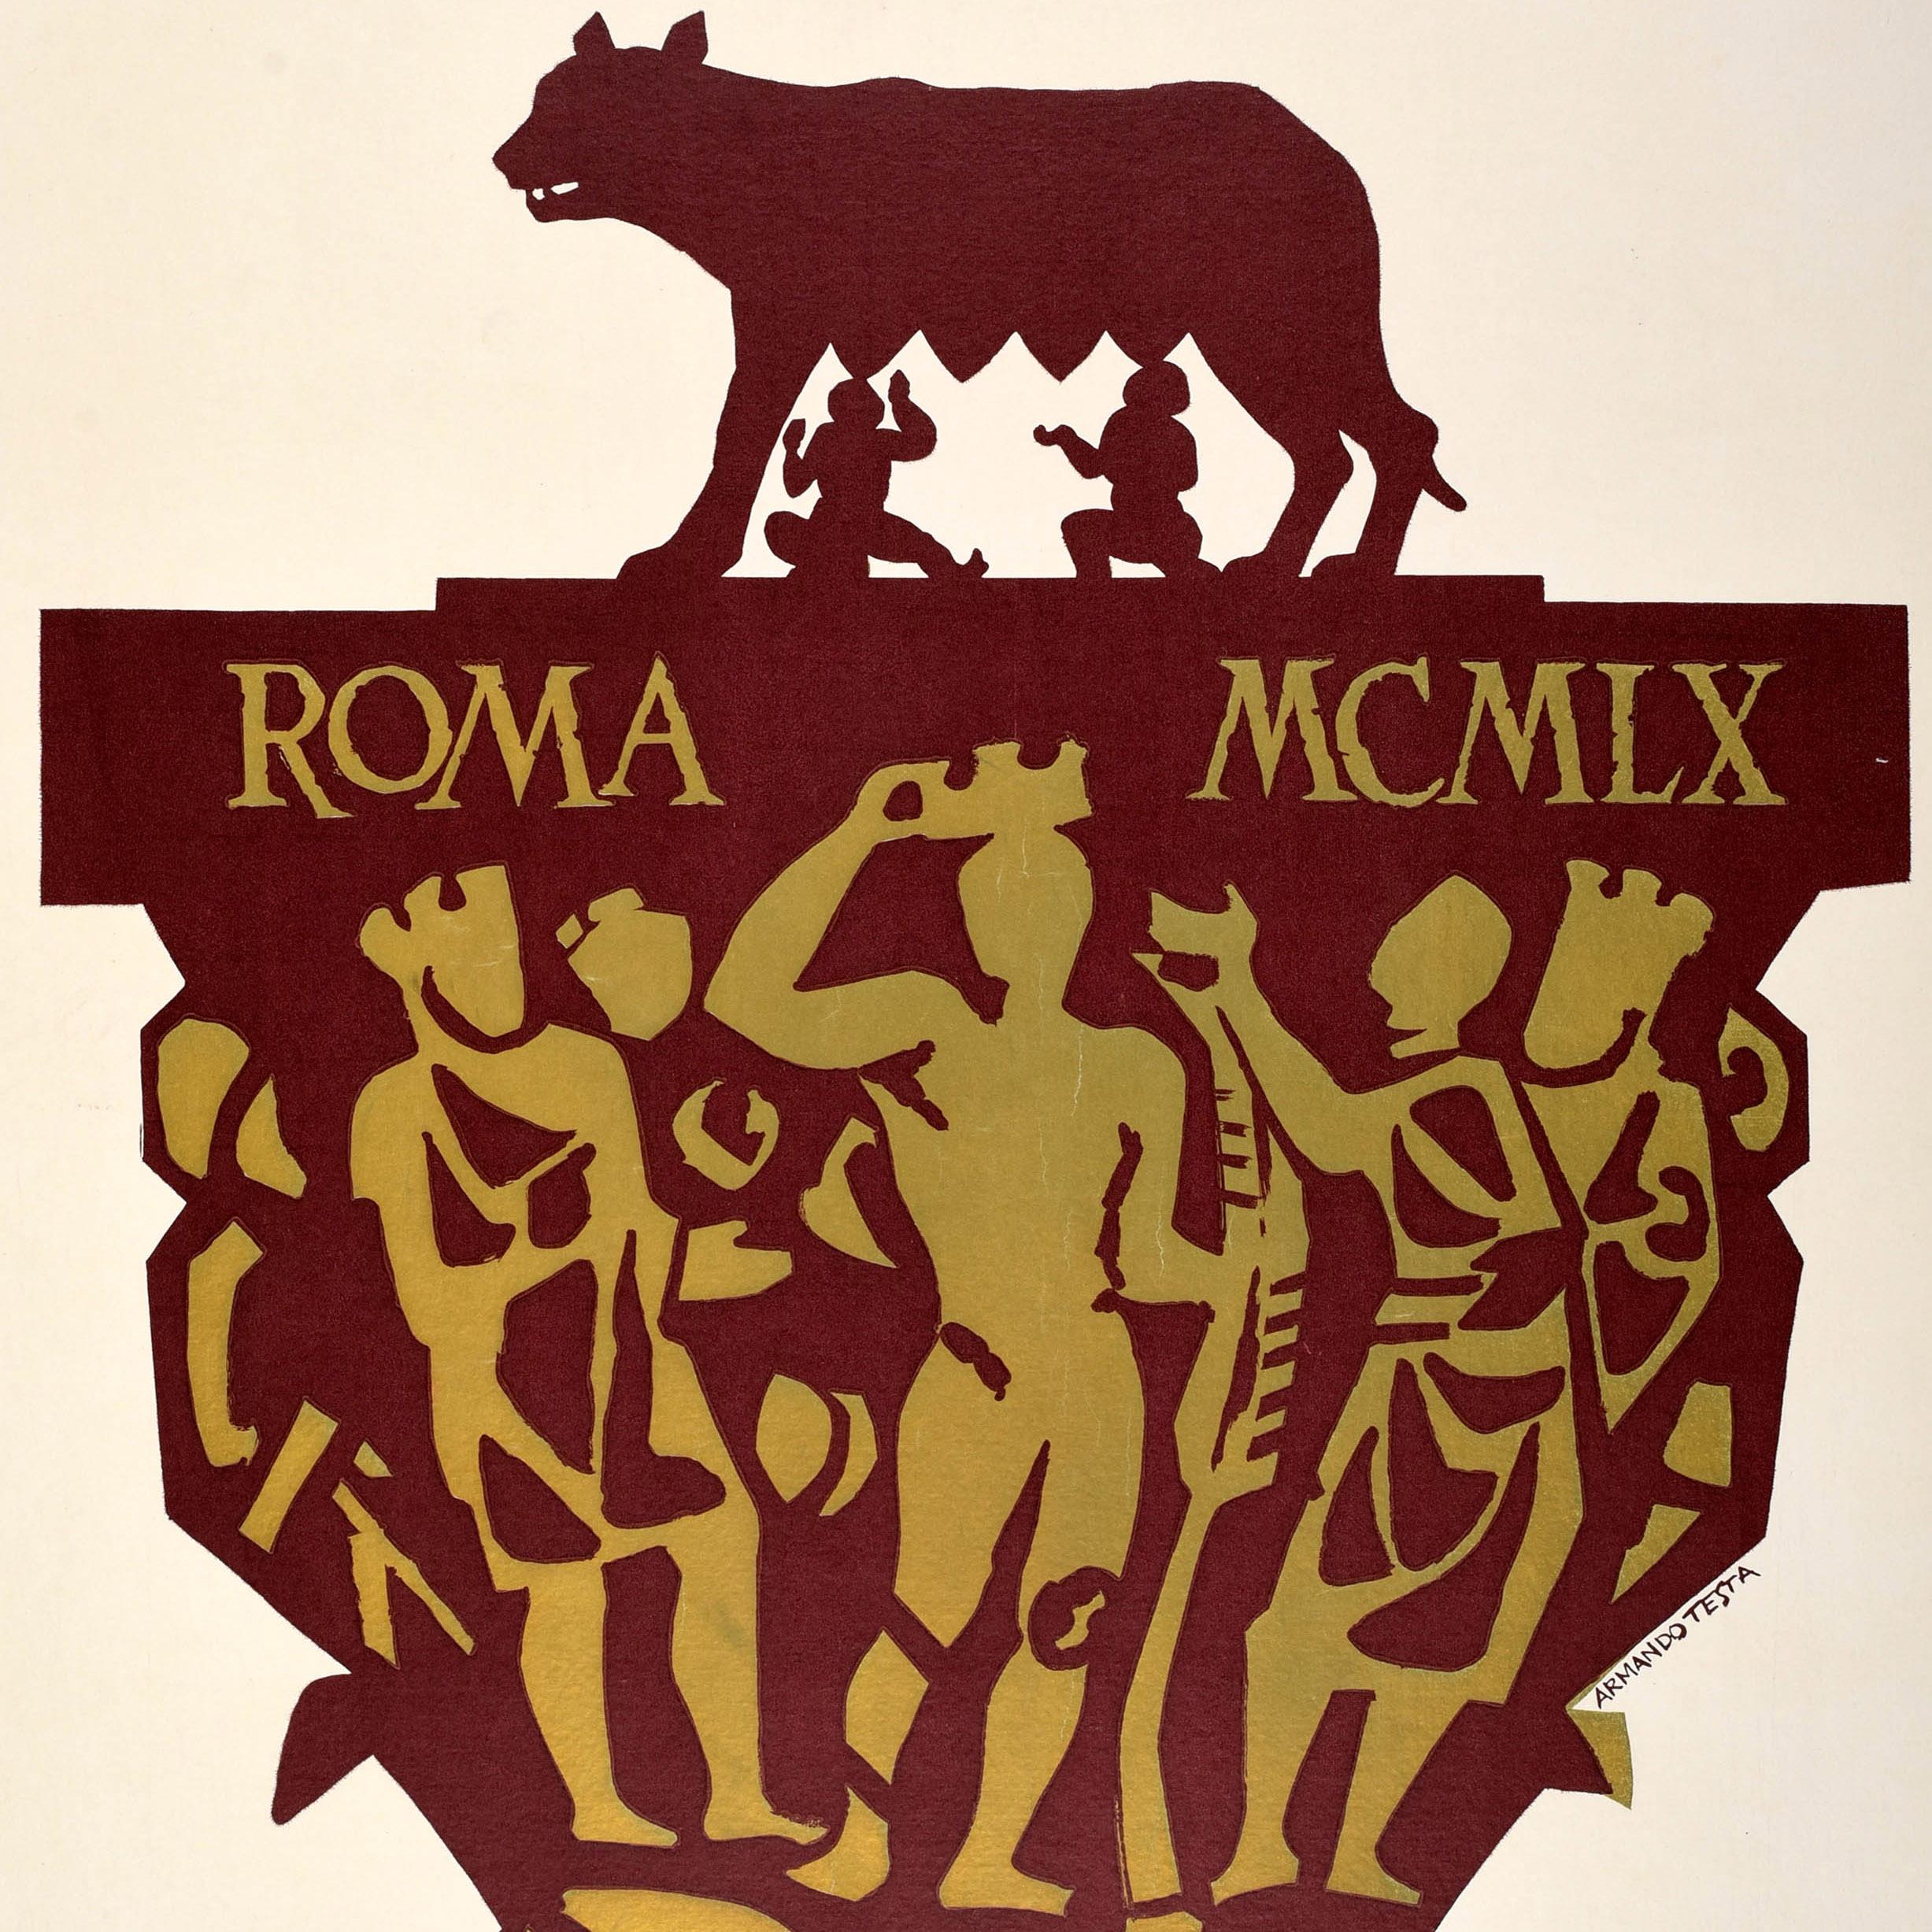 Affiche sportive originale très rare des Jeux olympiques de Rome, Italie, Testa russe - Print de Armando Testa